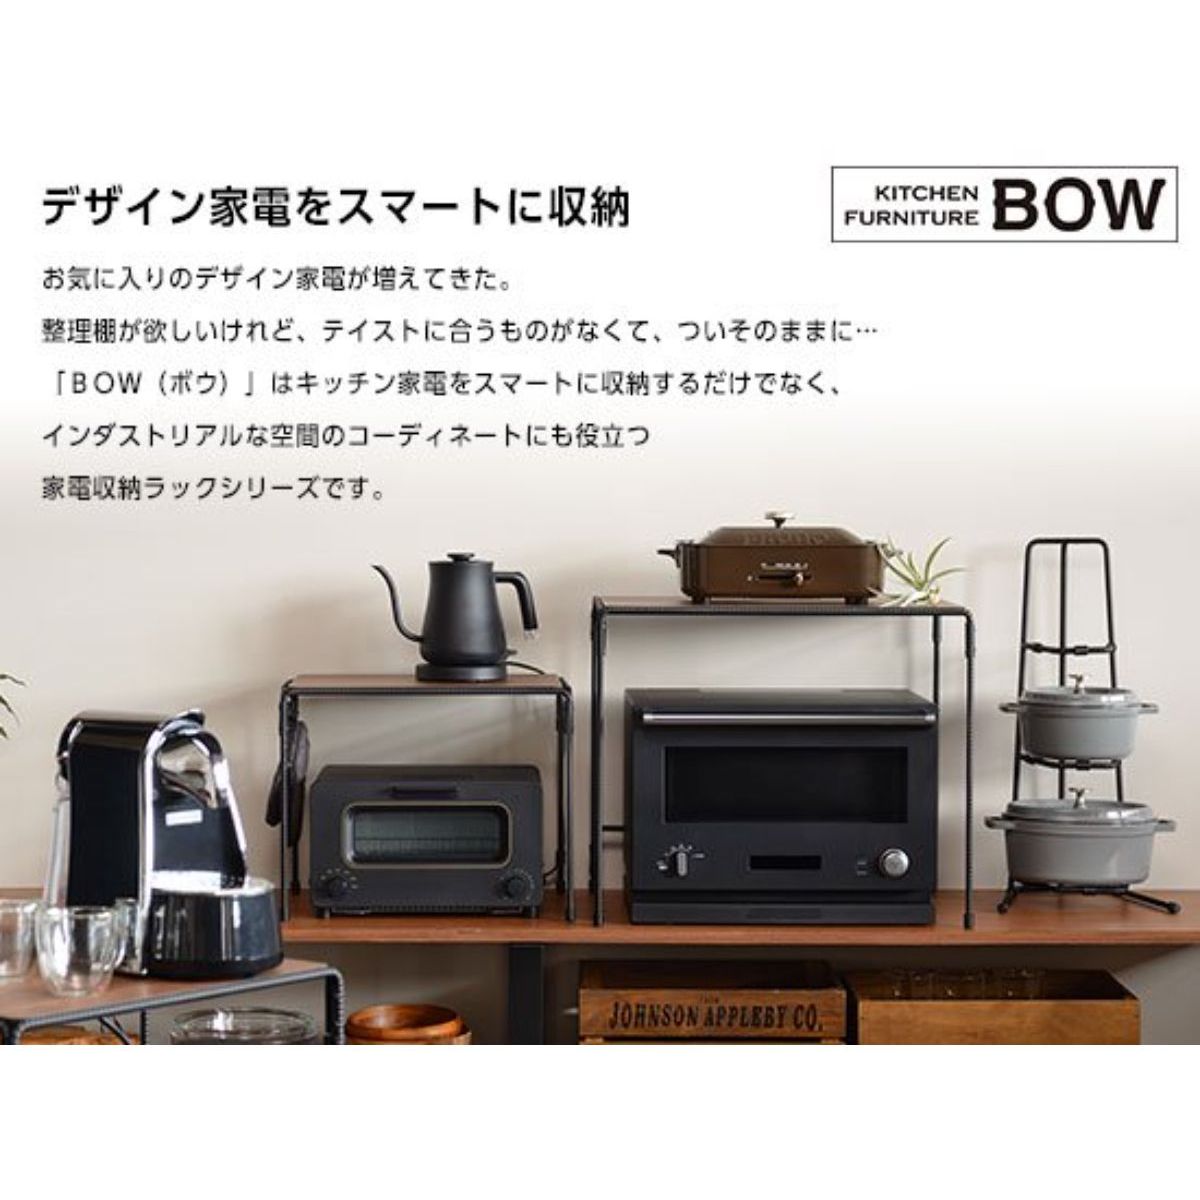 ひかりＴＶショッピング BOWテーブルワゴン アイアンラック キャスター付き 日本製 BWS8202｜オークス